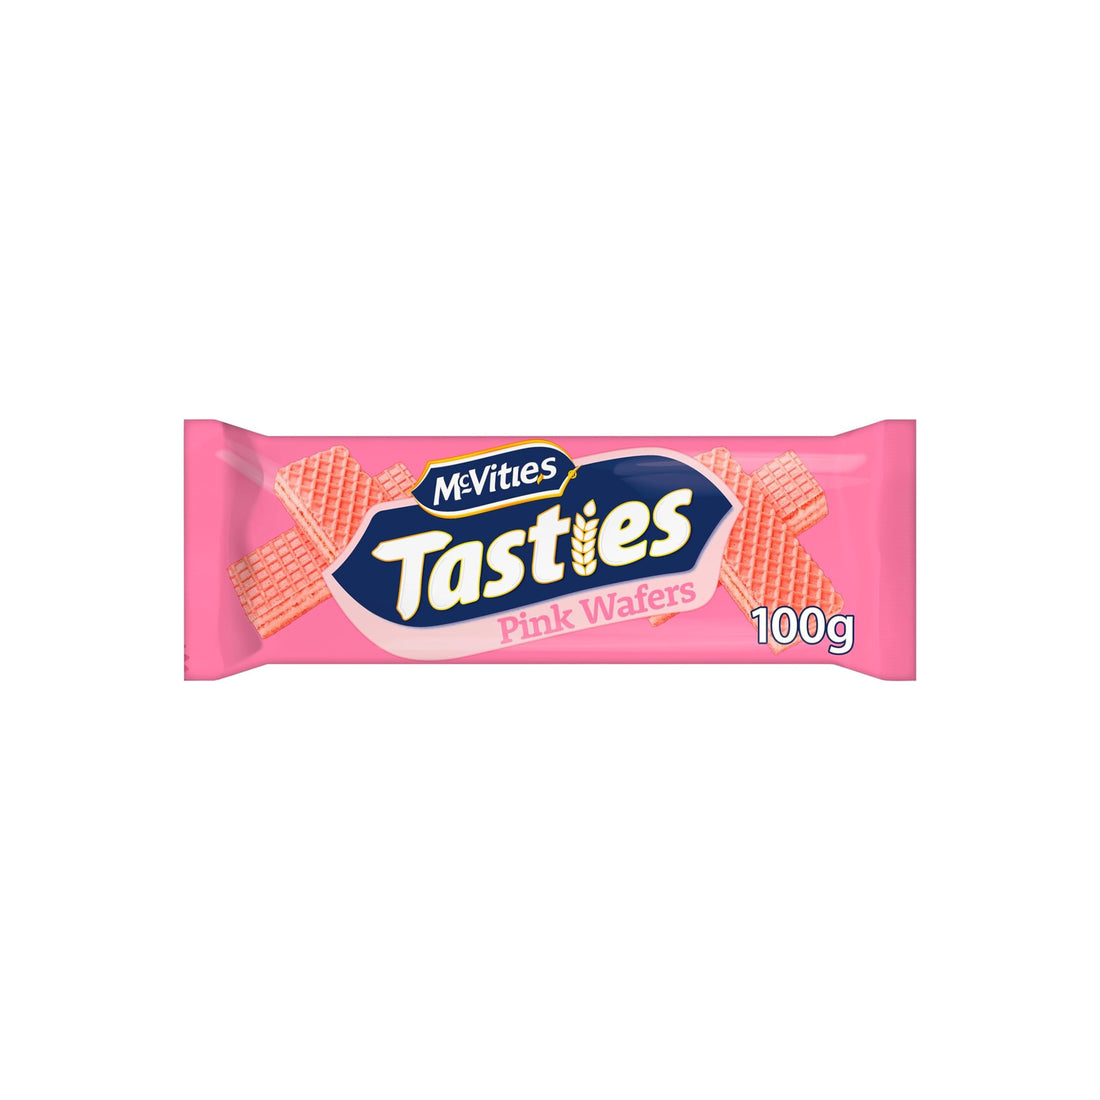 Mcvities Tasties Pink Wafers 100g